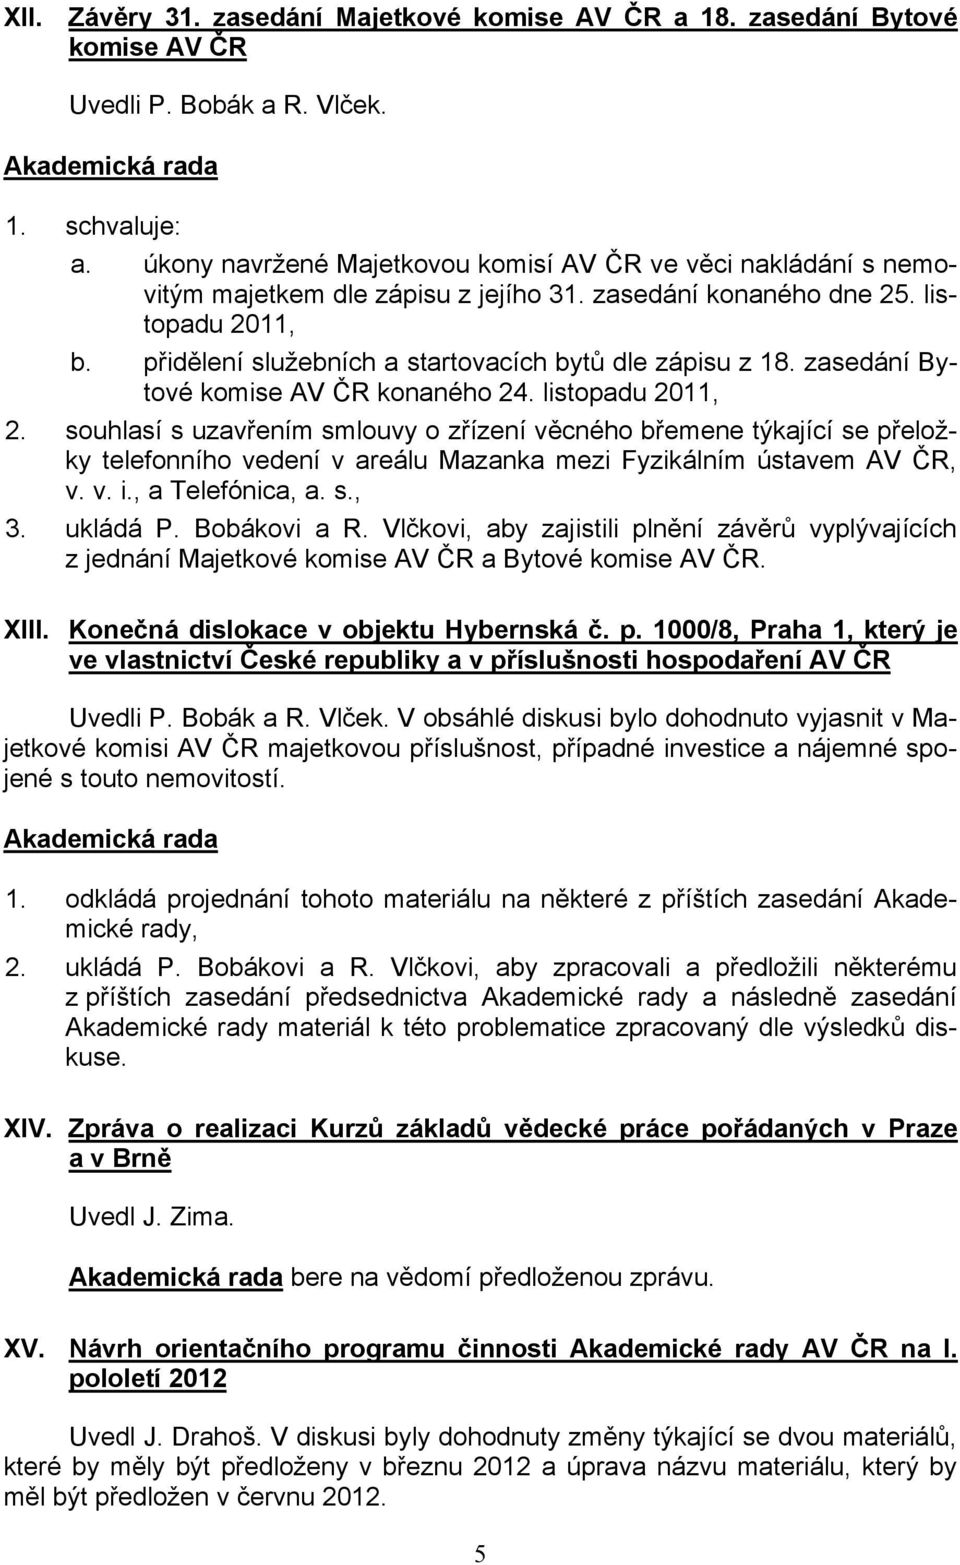 přidělení služebních a startovacích bytů dle zápisu z 18. zasedání Bytové komise AV ČR konaného 24. listopadu 2011, 2.